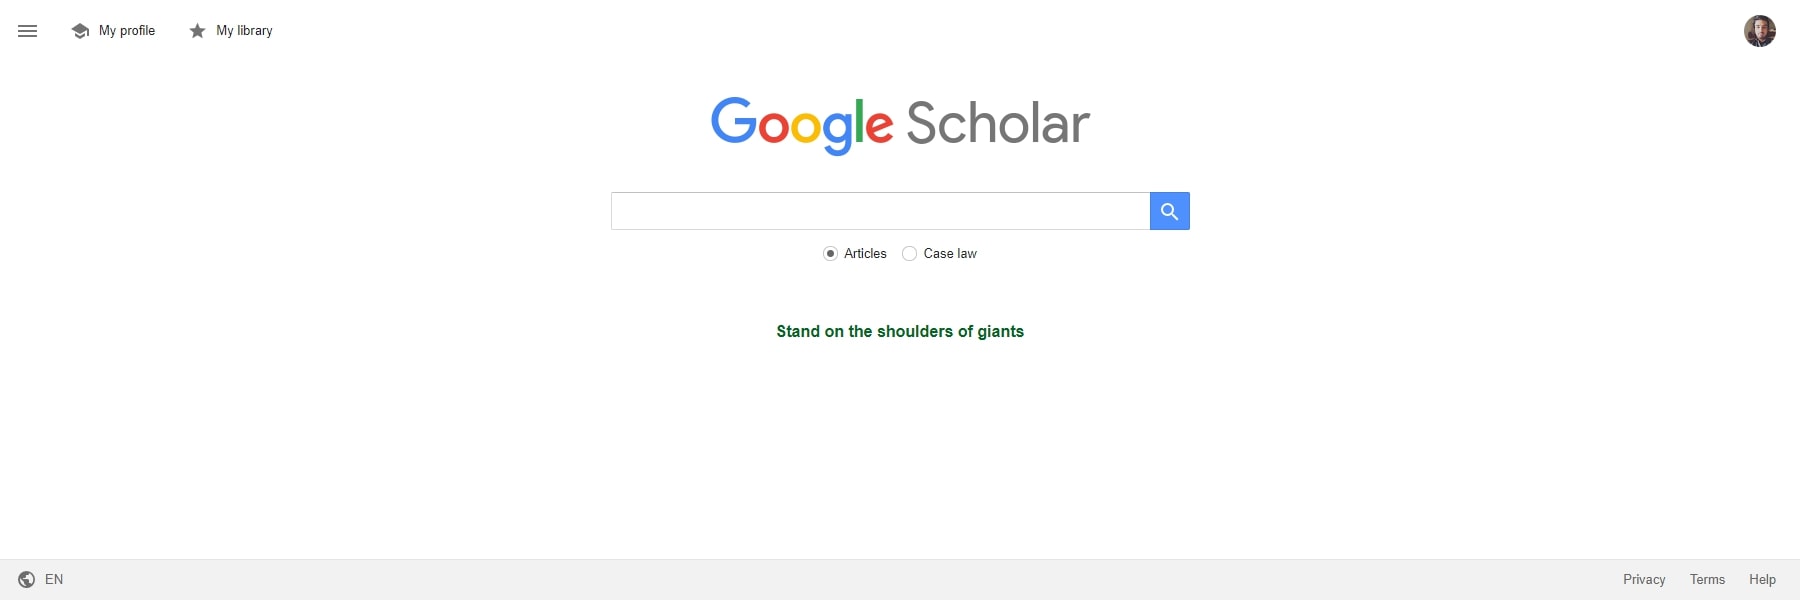 Narzędzia Google Scholar AI dla edukacji